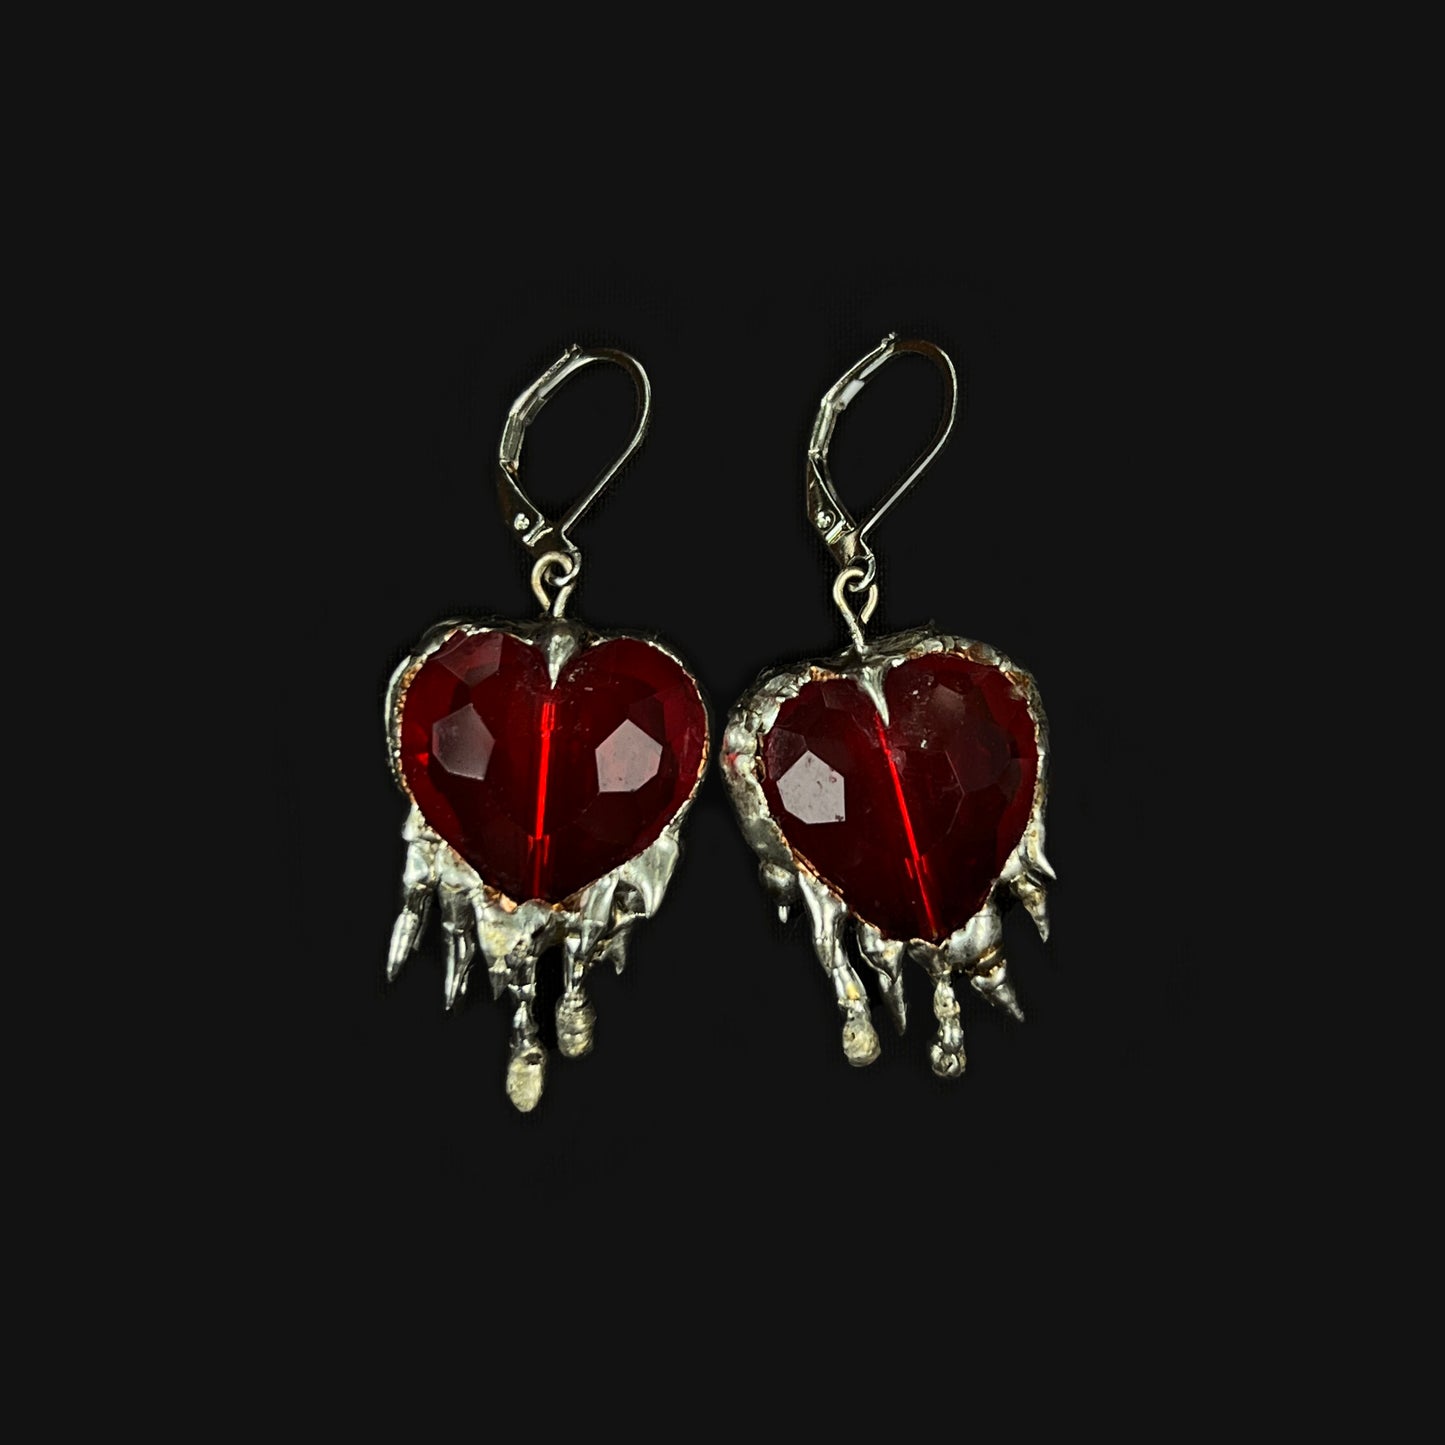 Soldered heart earrings - red